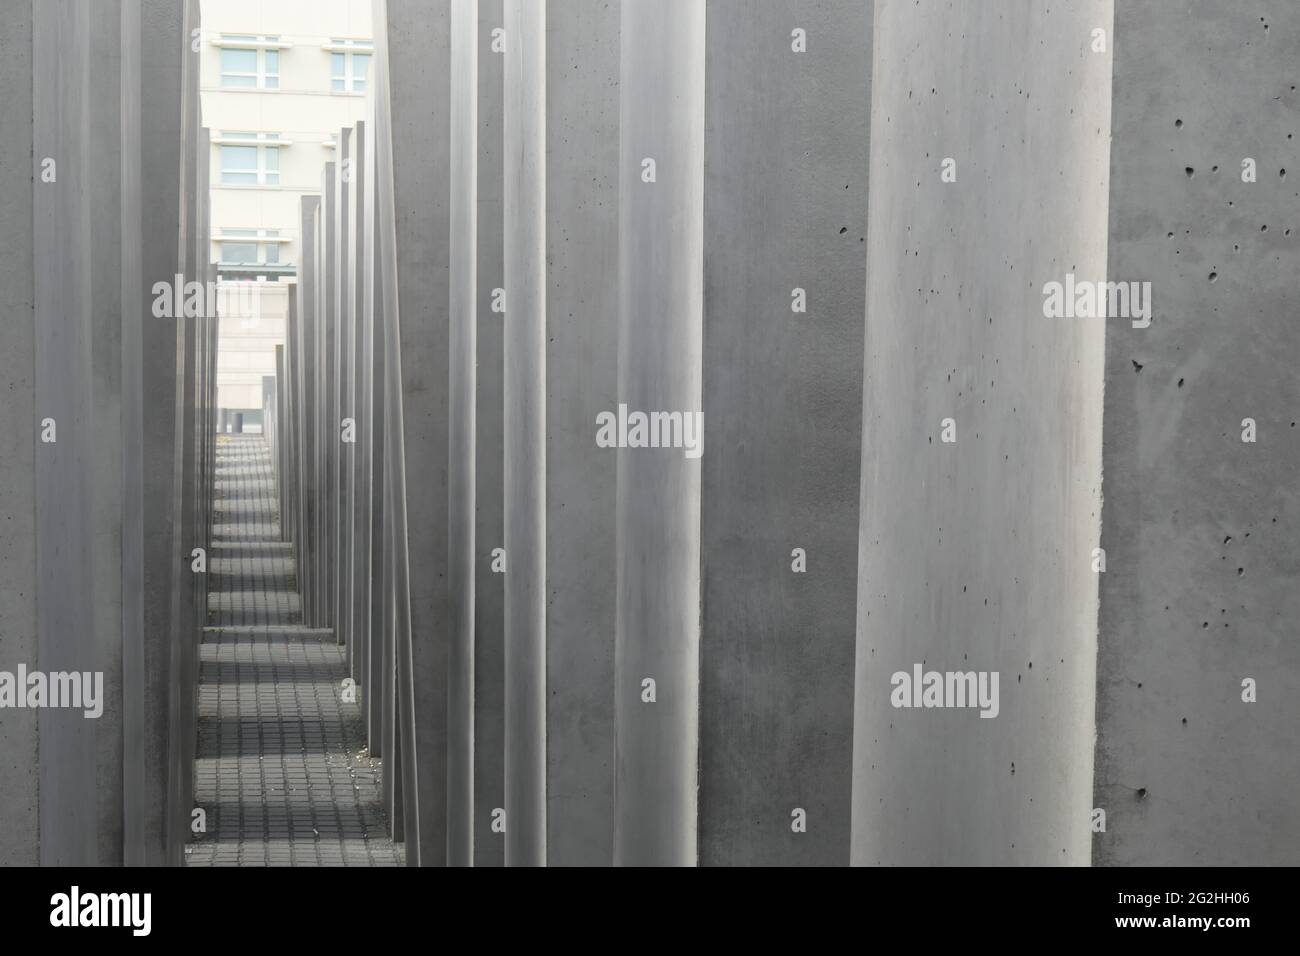 Mémorial de l'Holocauste, mémorial pour les Juifs assassinés, Berlin Mitte, Berlin, Allemagne Banque D'Images